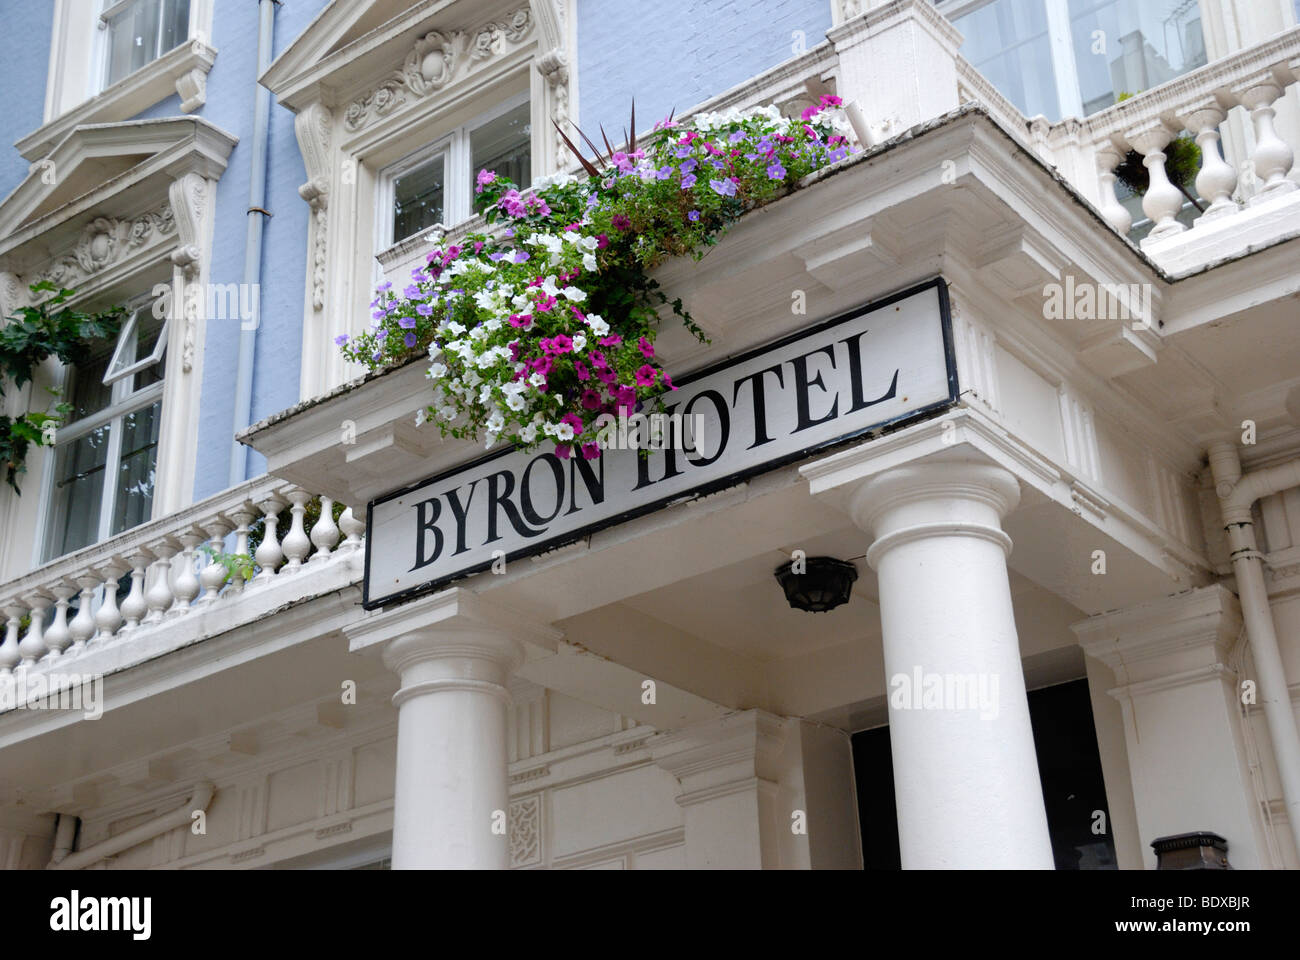 L'hôtel Byron, Queensborough Terrace, London W2, England, UK Banque D'Images